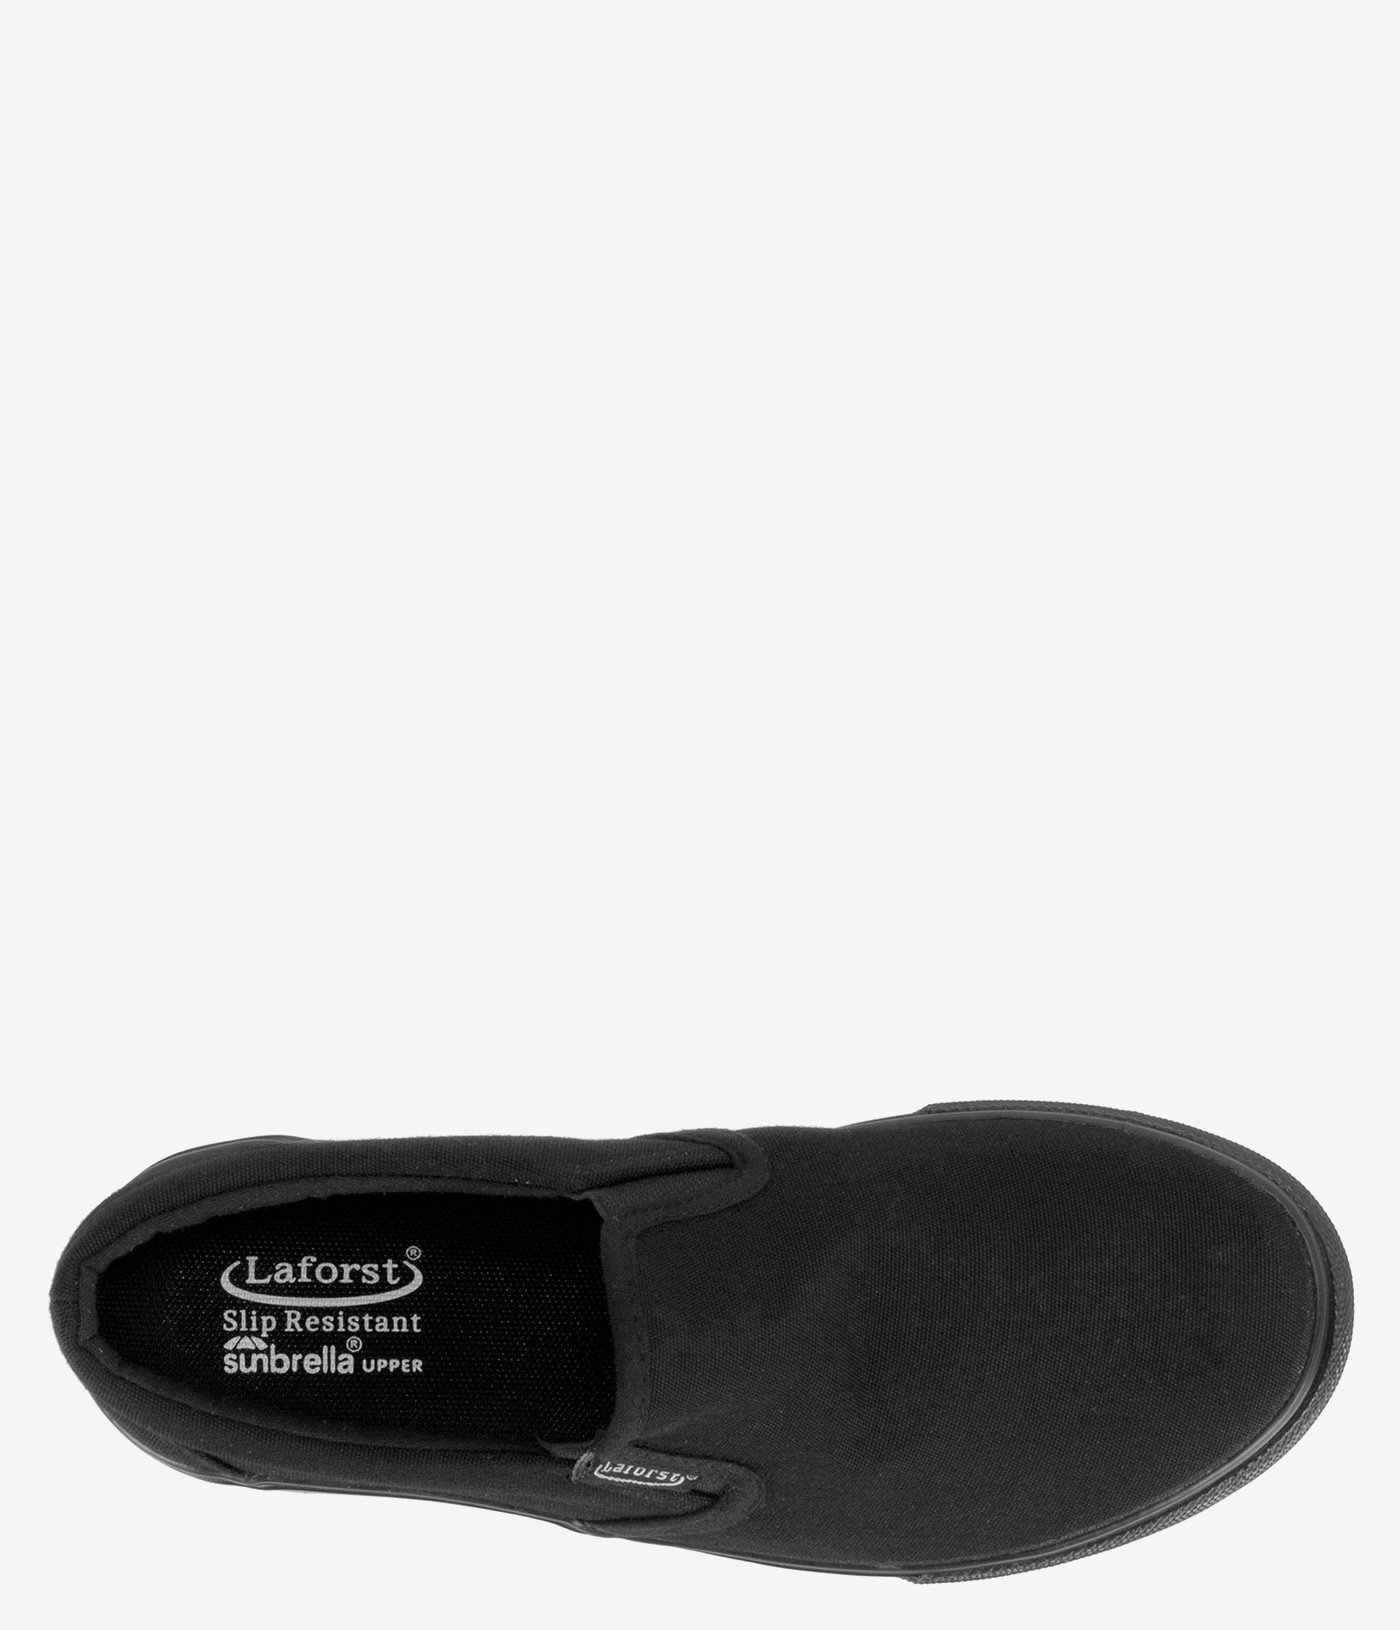 Laforst Sandy Slip Resistant Slip On | Boot World